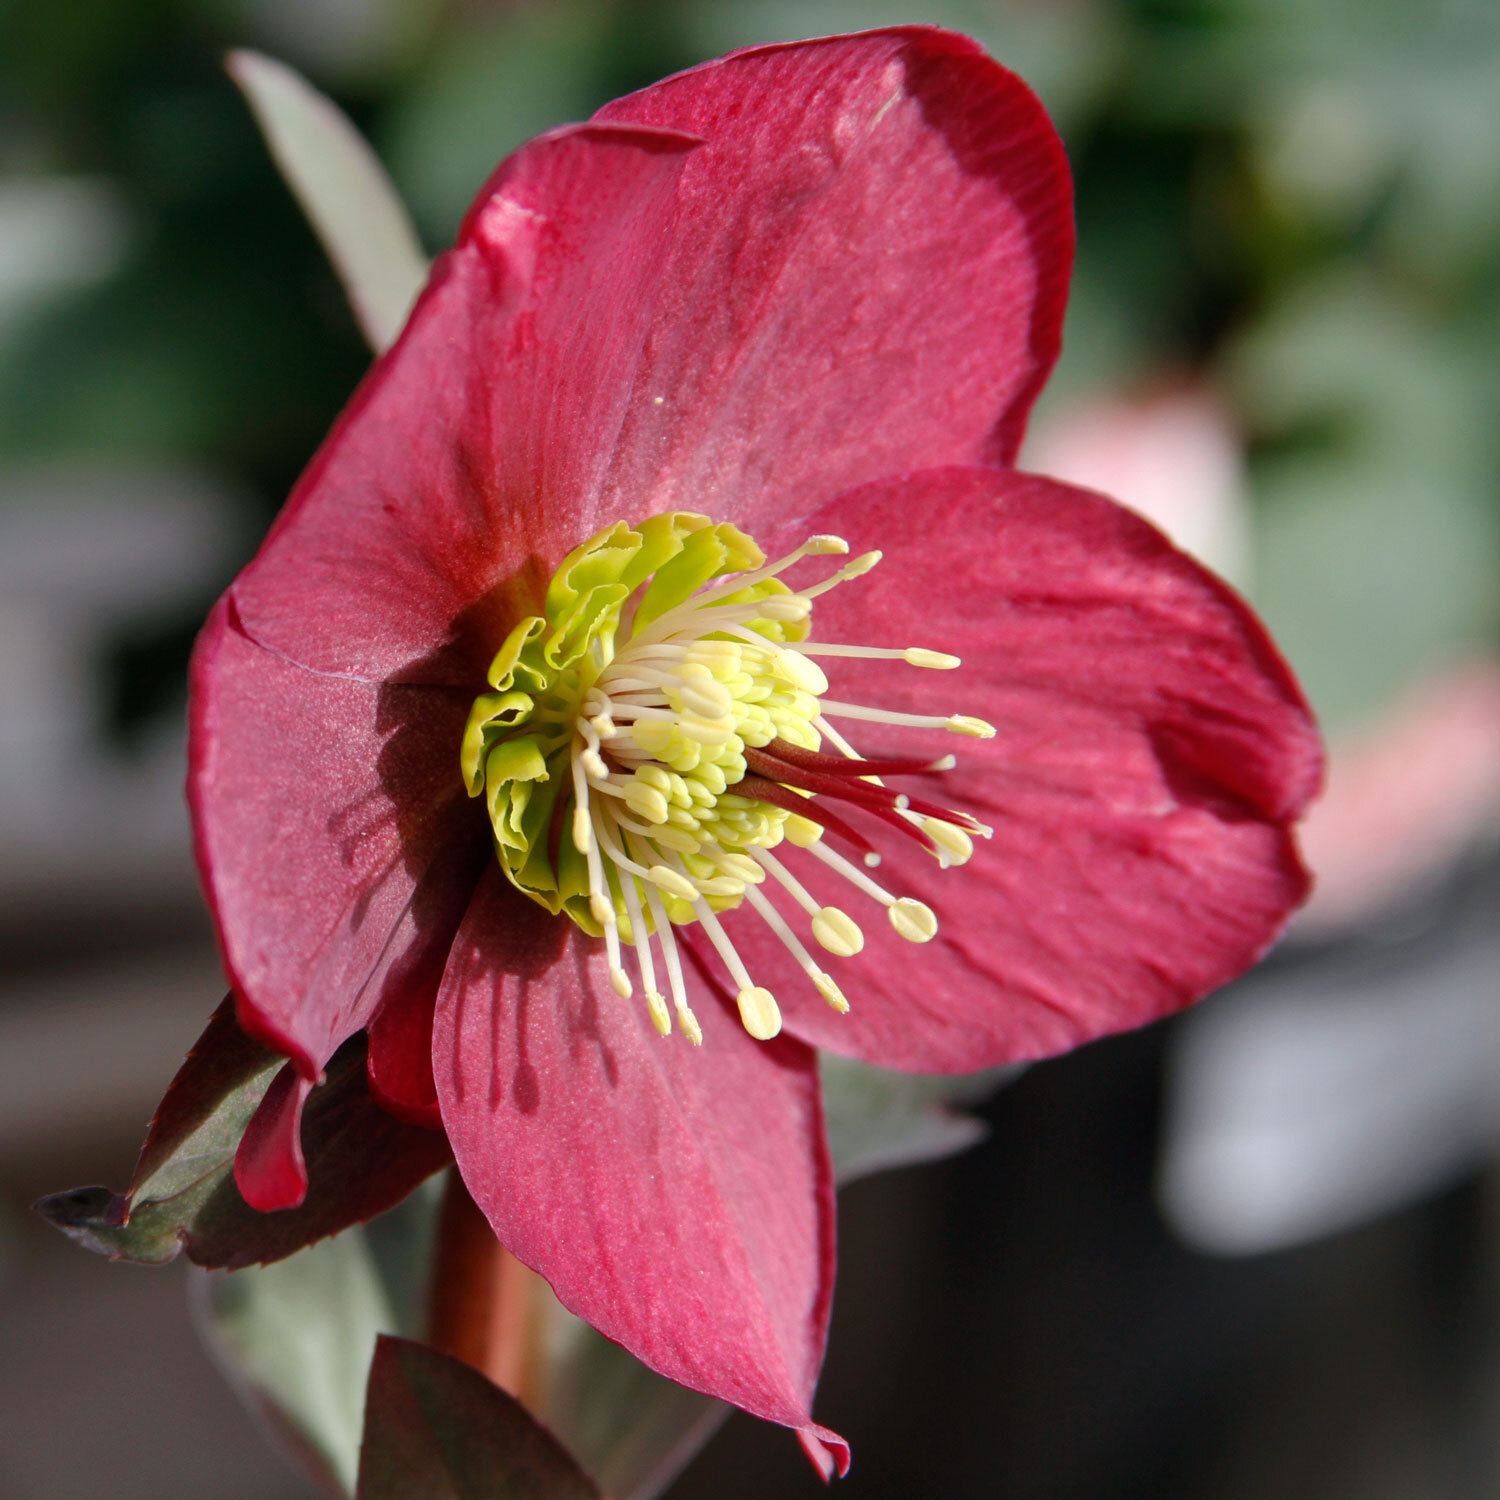 hellebore: the beautiful winter flower — seattle's favorite garden